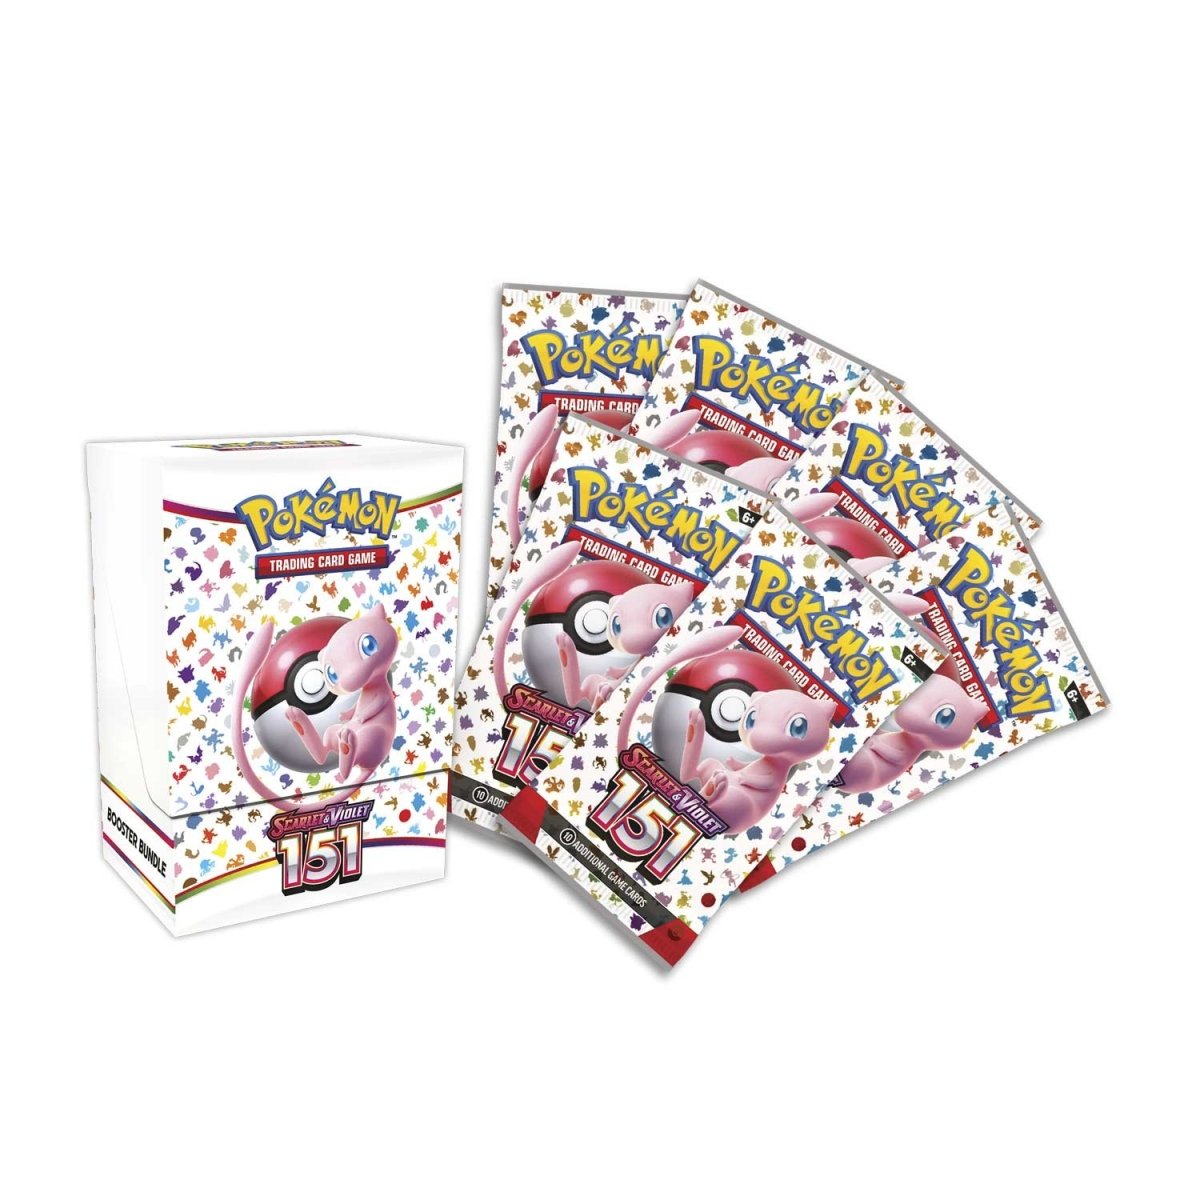 Pokémon Card Game Scarlet & Violet 151 Booster Bundle Official Factory Sealed